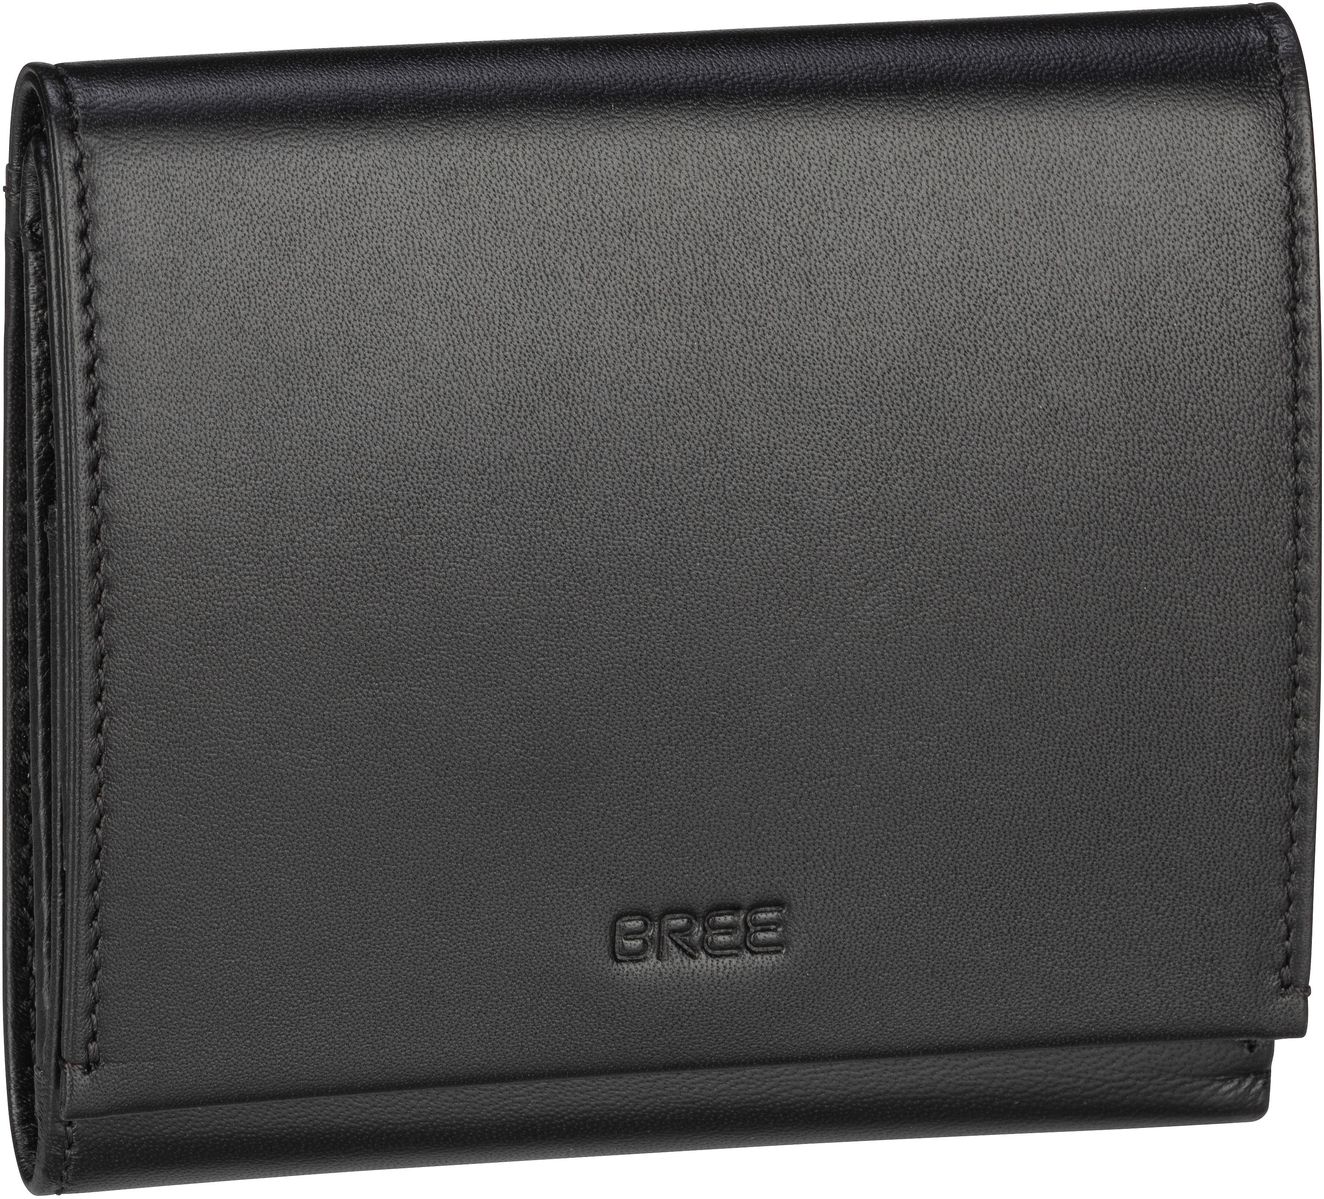 Bree Pure SLG 100 - Black